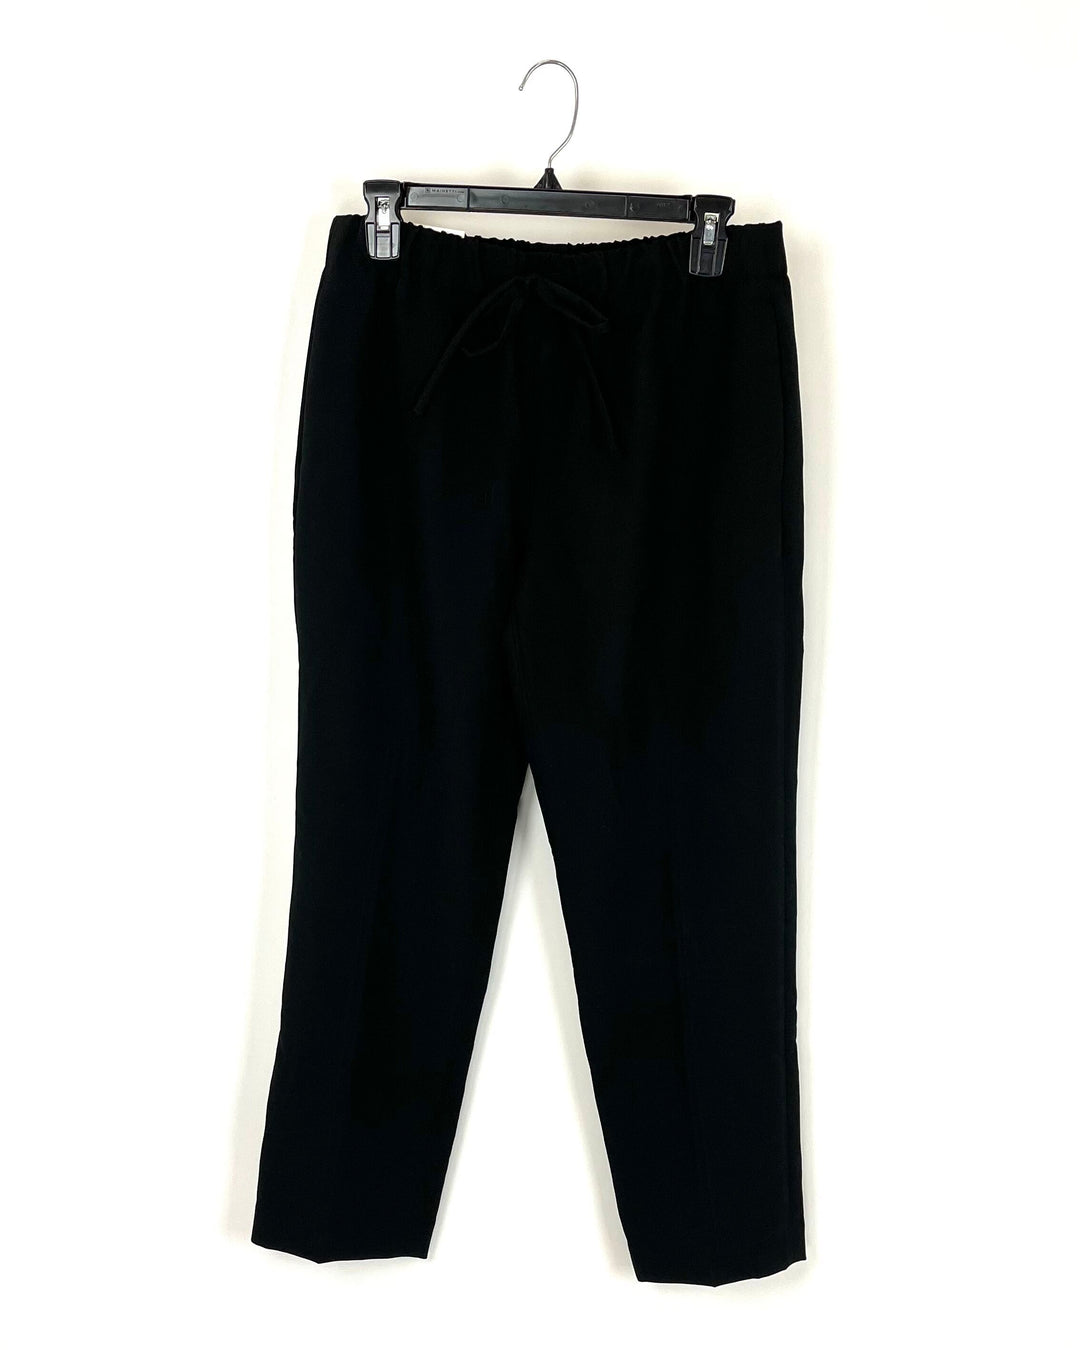 Black Pants - Size 6